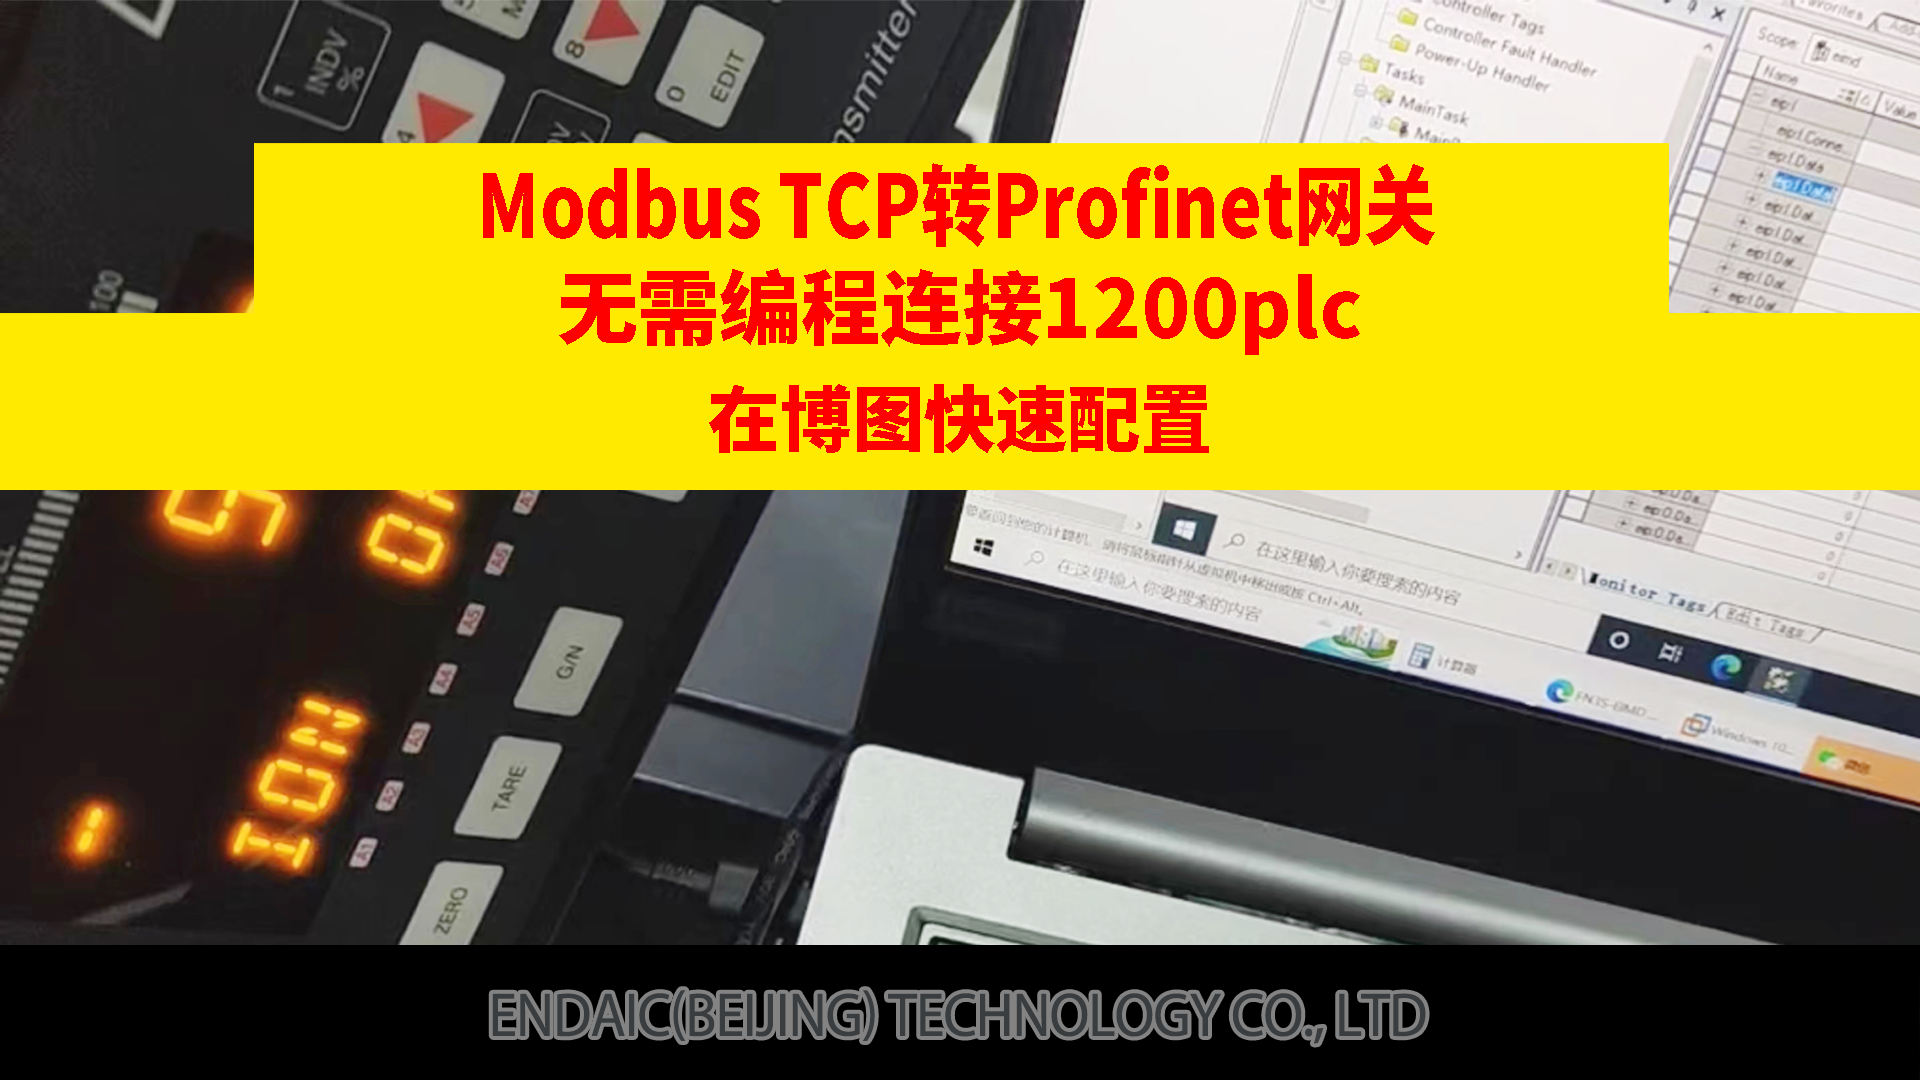 Modbus TCP转Profinet网关连接1200plc在博图里快速配置